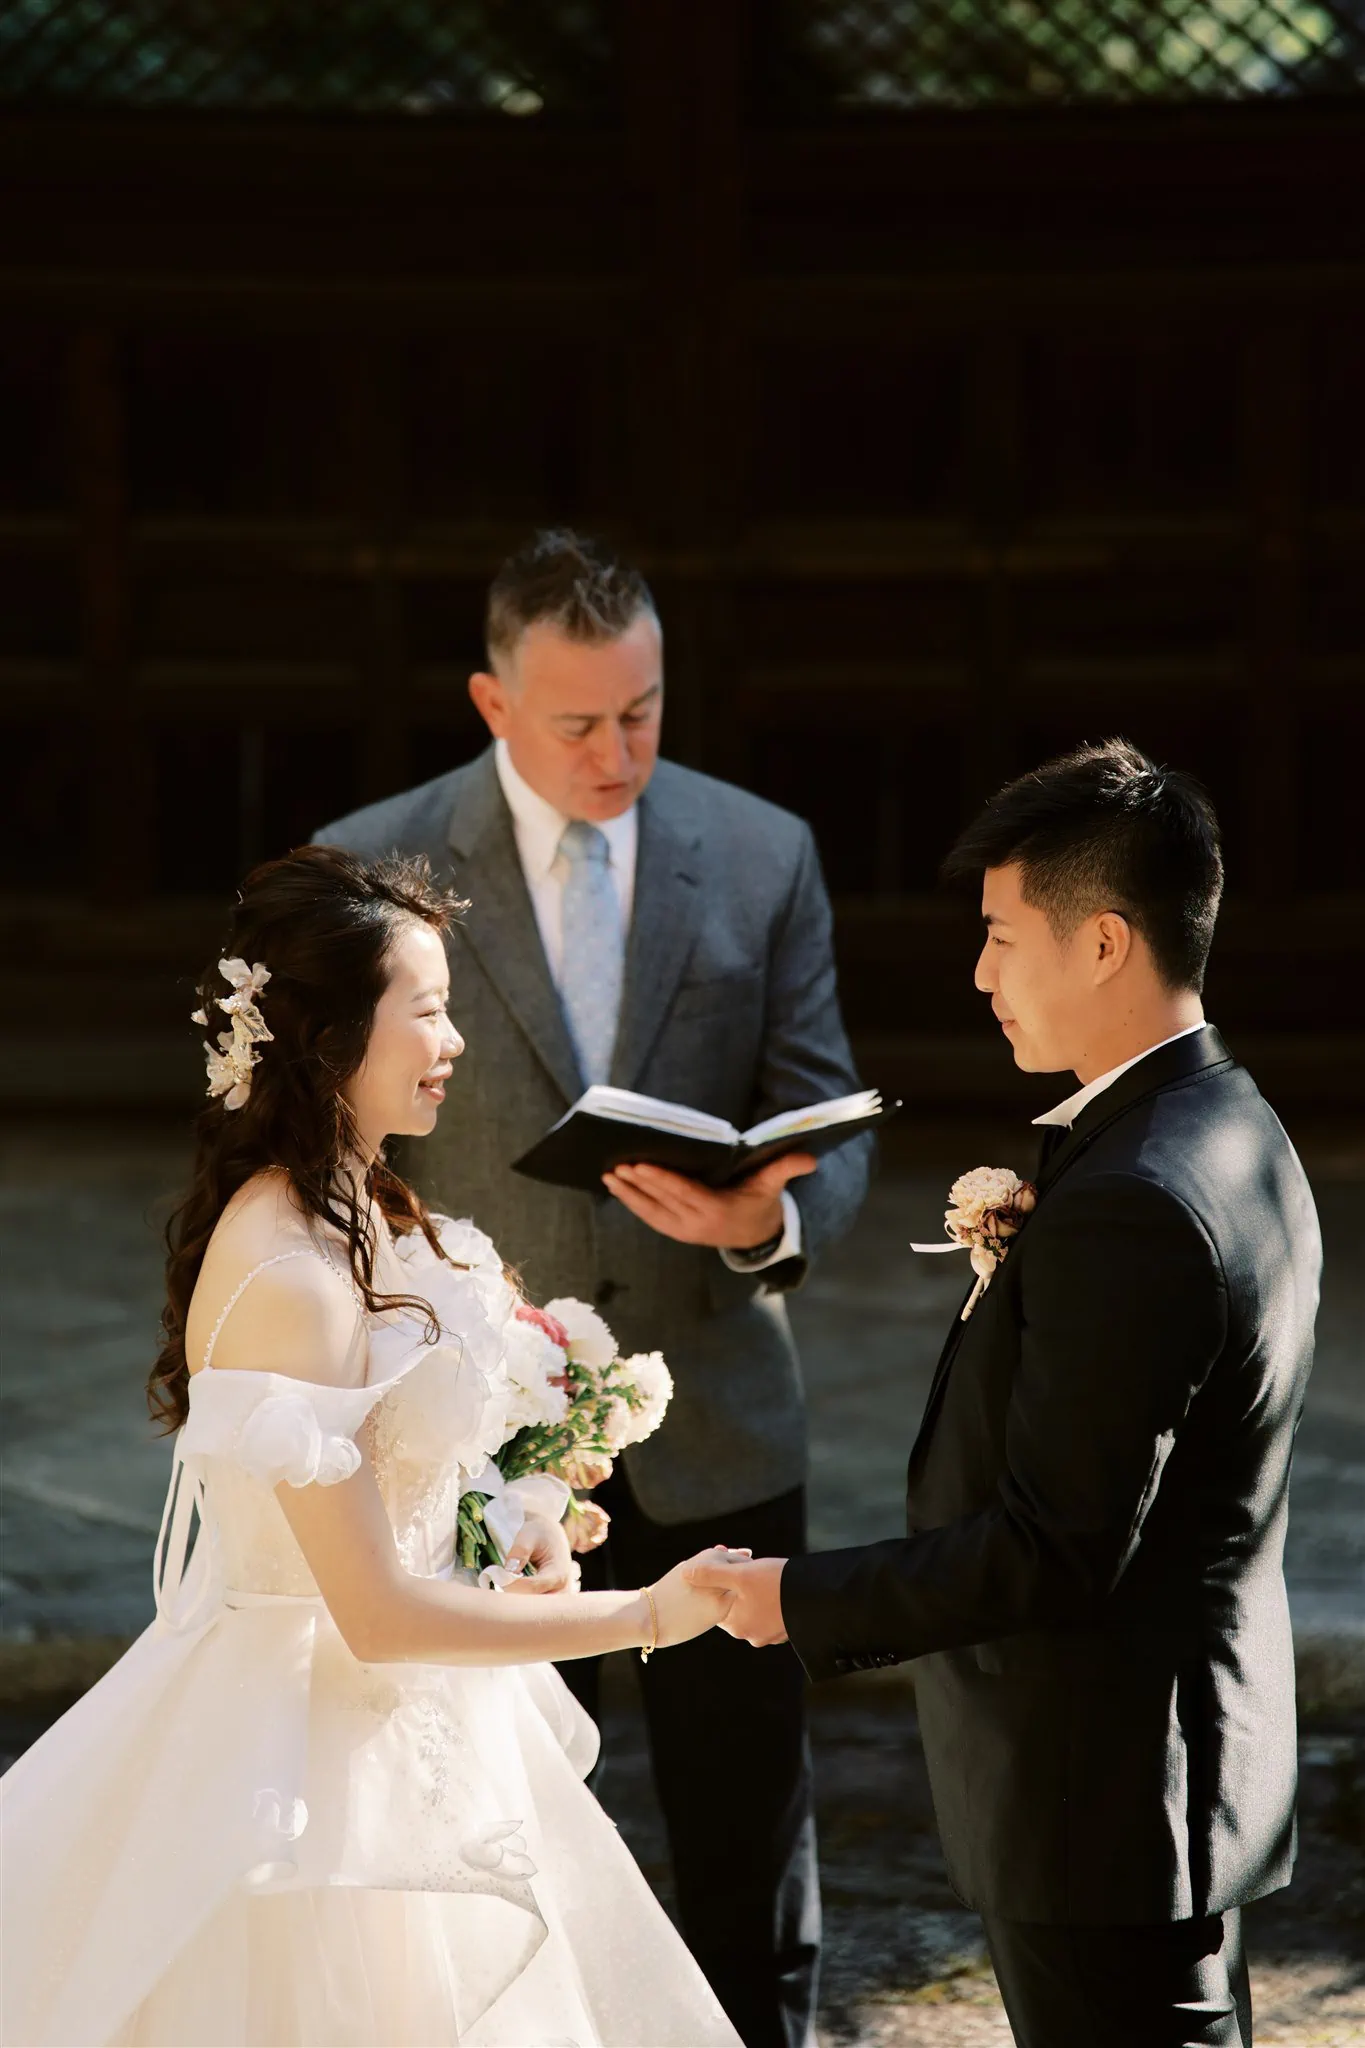 Kyoto Tokyo Japan Elopement Wedding Photographer, Planner & Videographer | A Japan elopement photographer captures the heartfelt exchange of vows between a bride and groom in an outdoor ceremony.